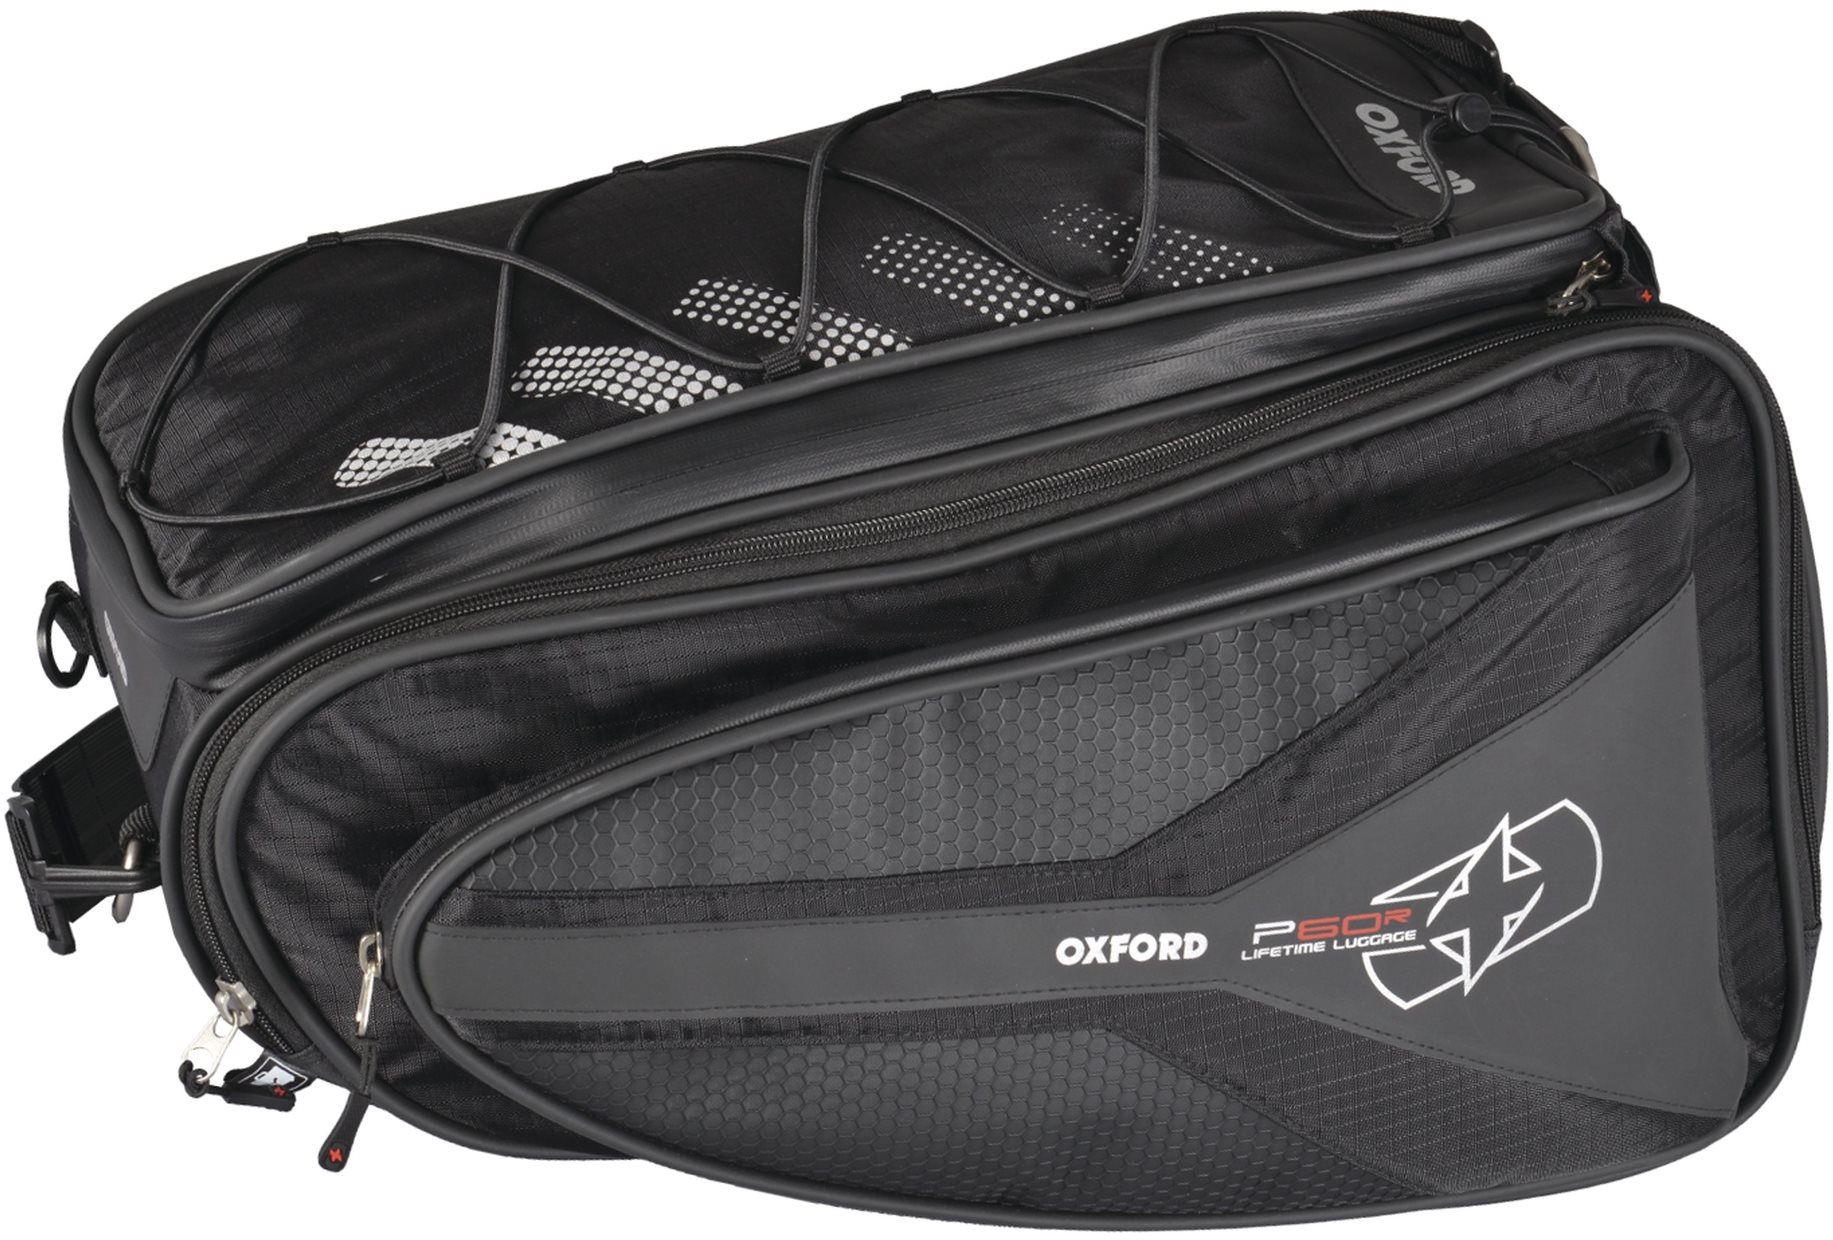 OXFORD oldalsó táskák a motorkerékpár P60R számára (fekete, 60 literes, pár)